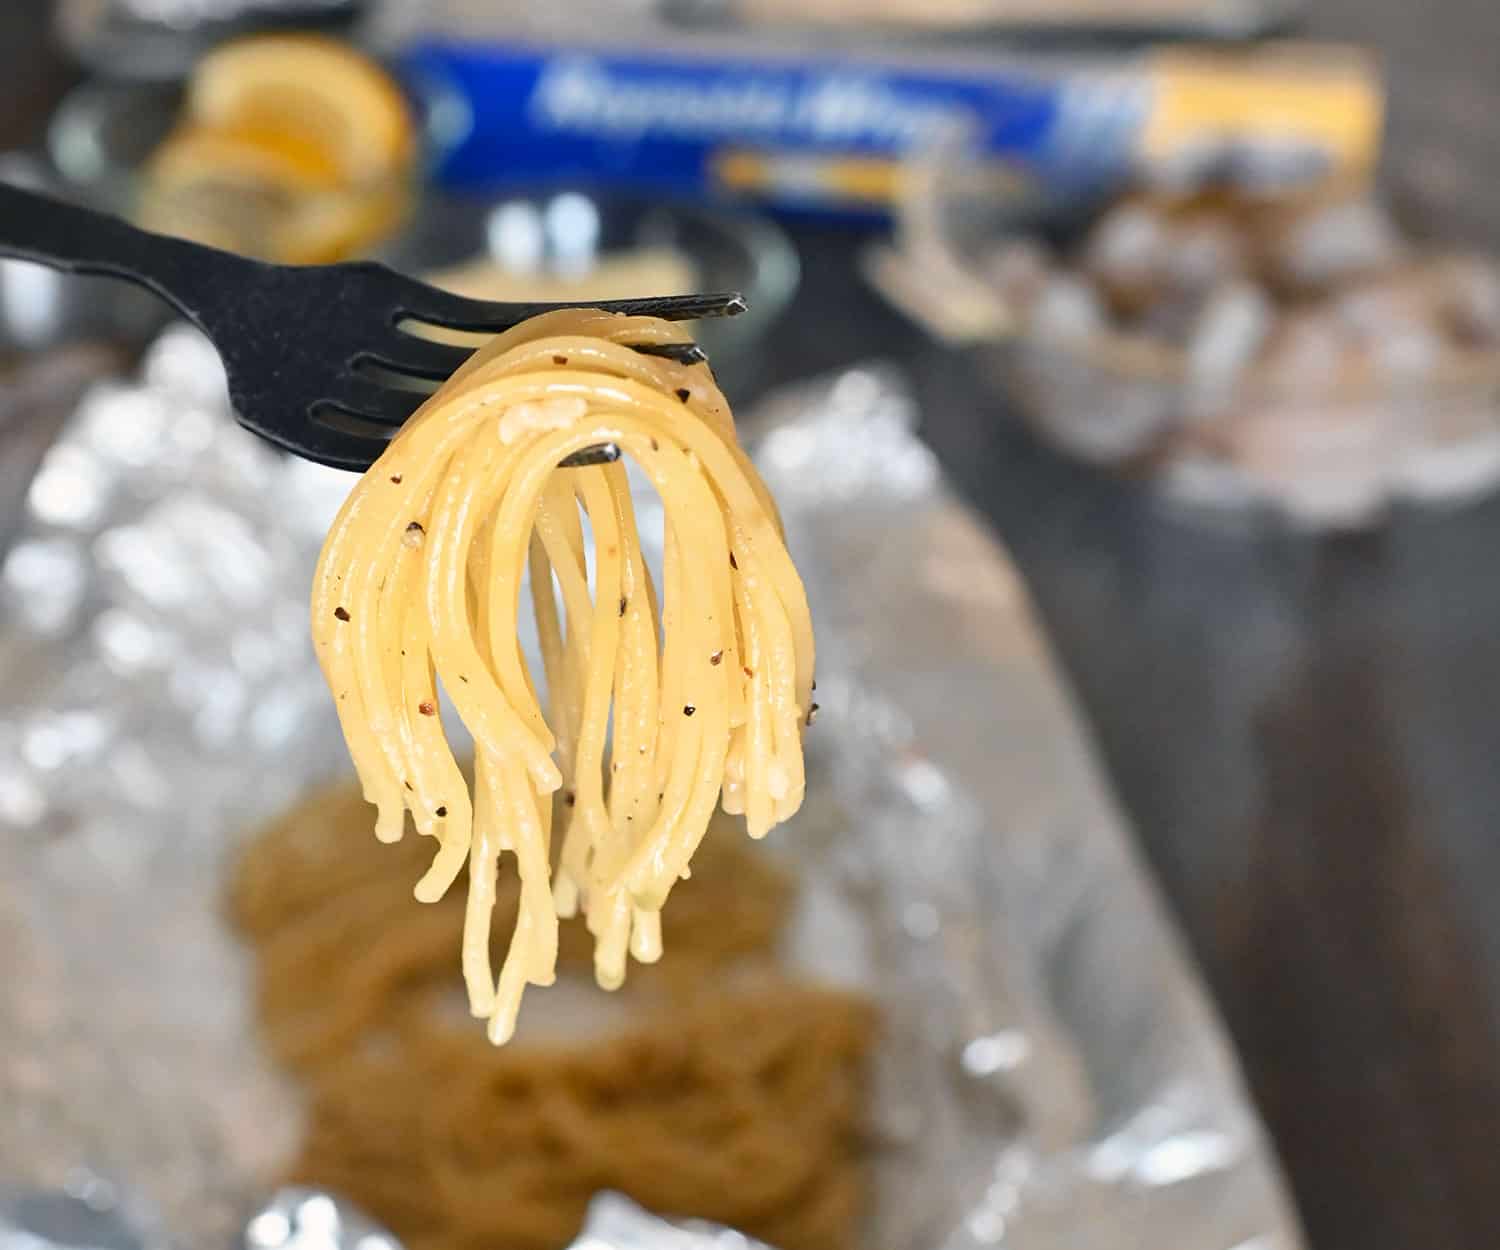 al dente noodles draped on a fork